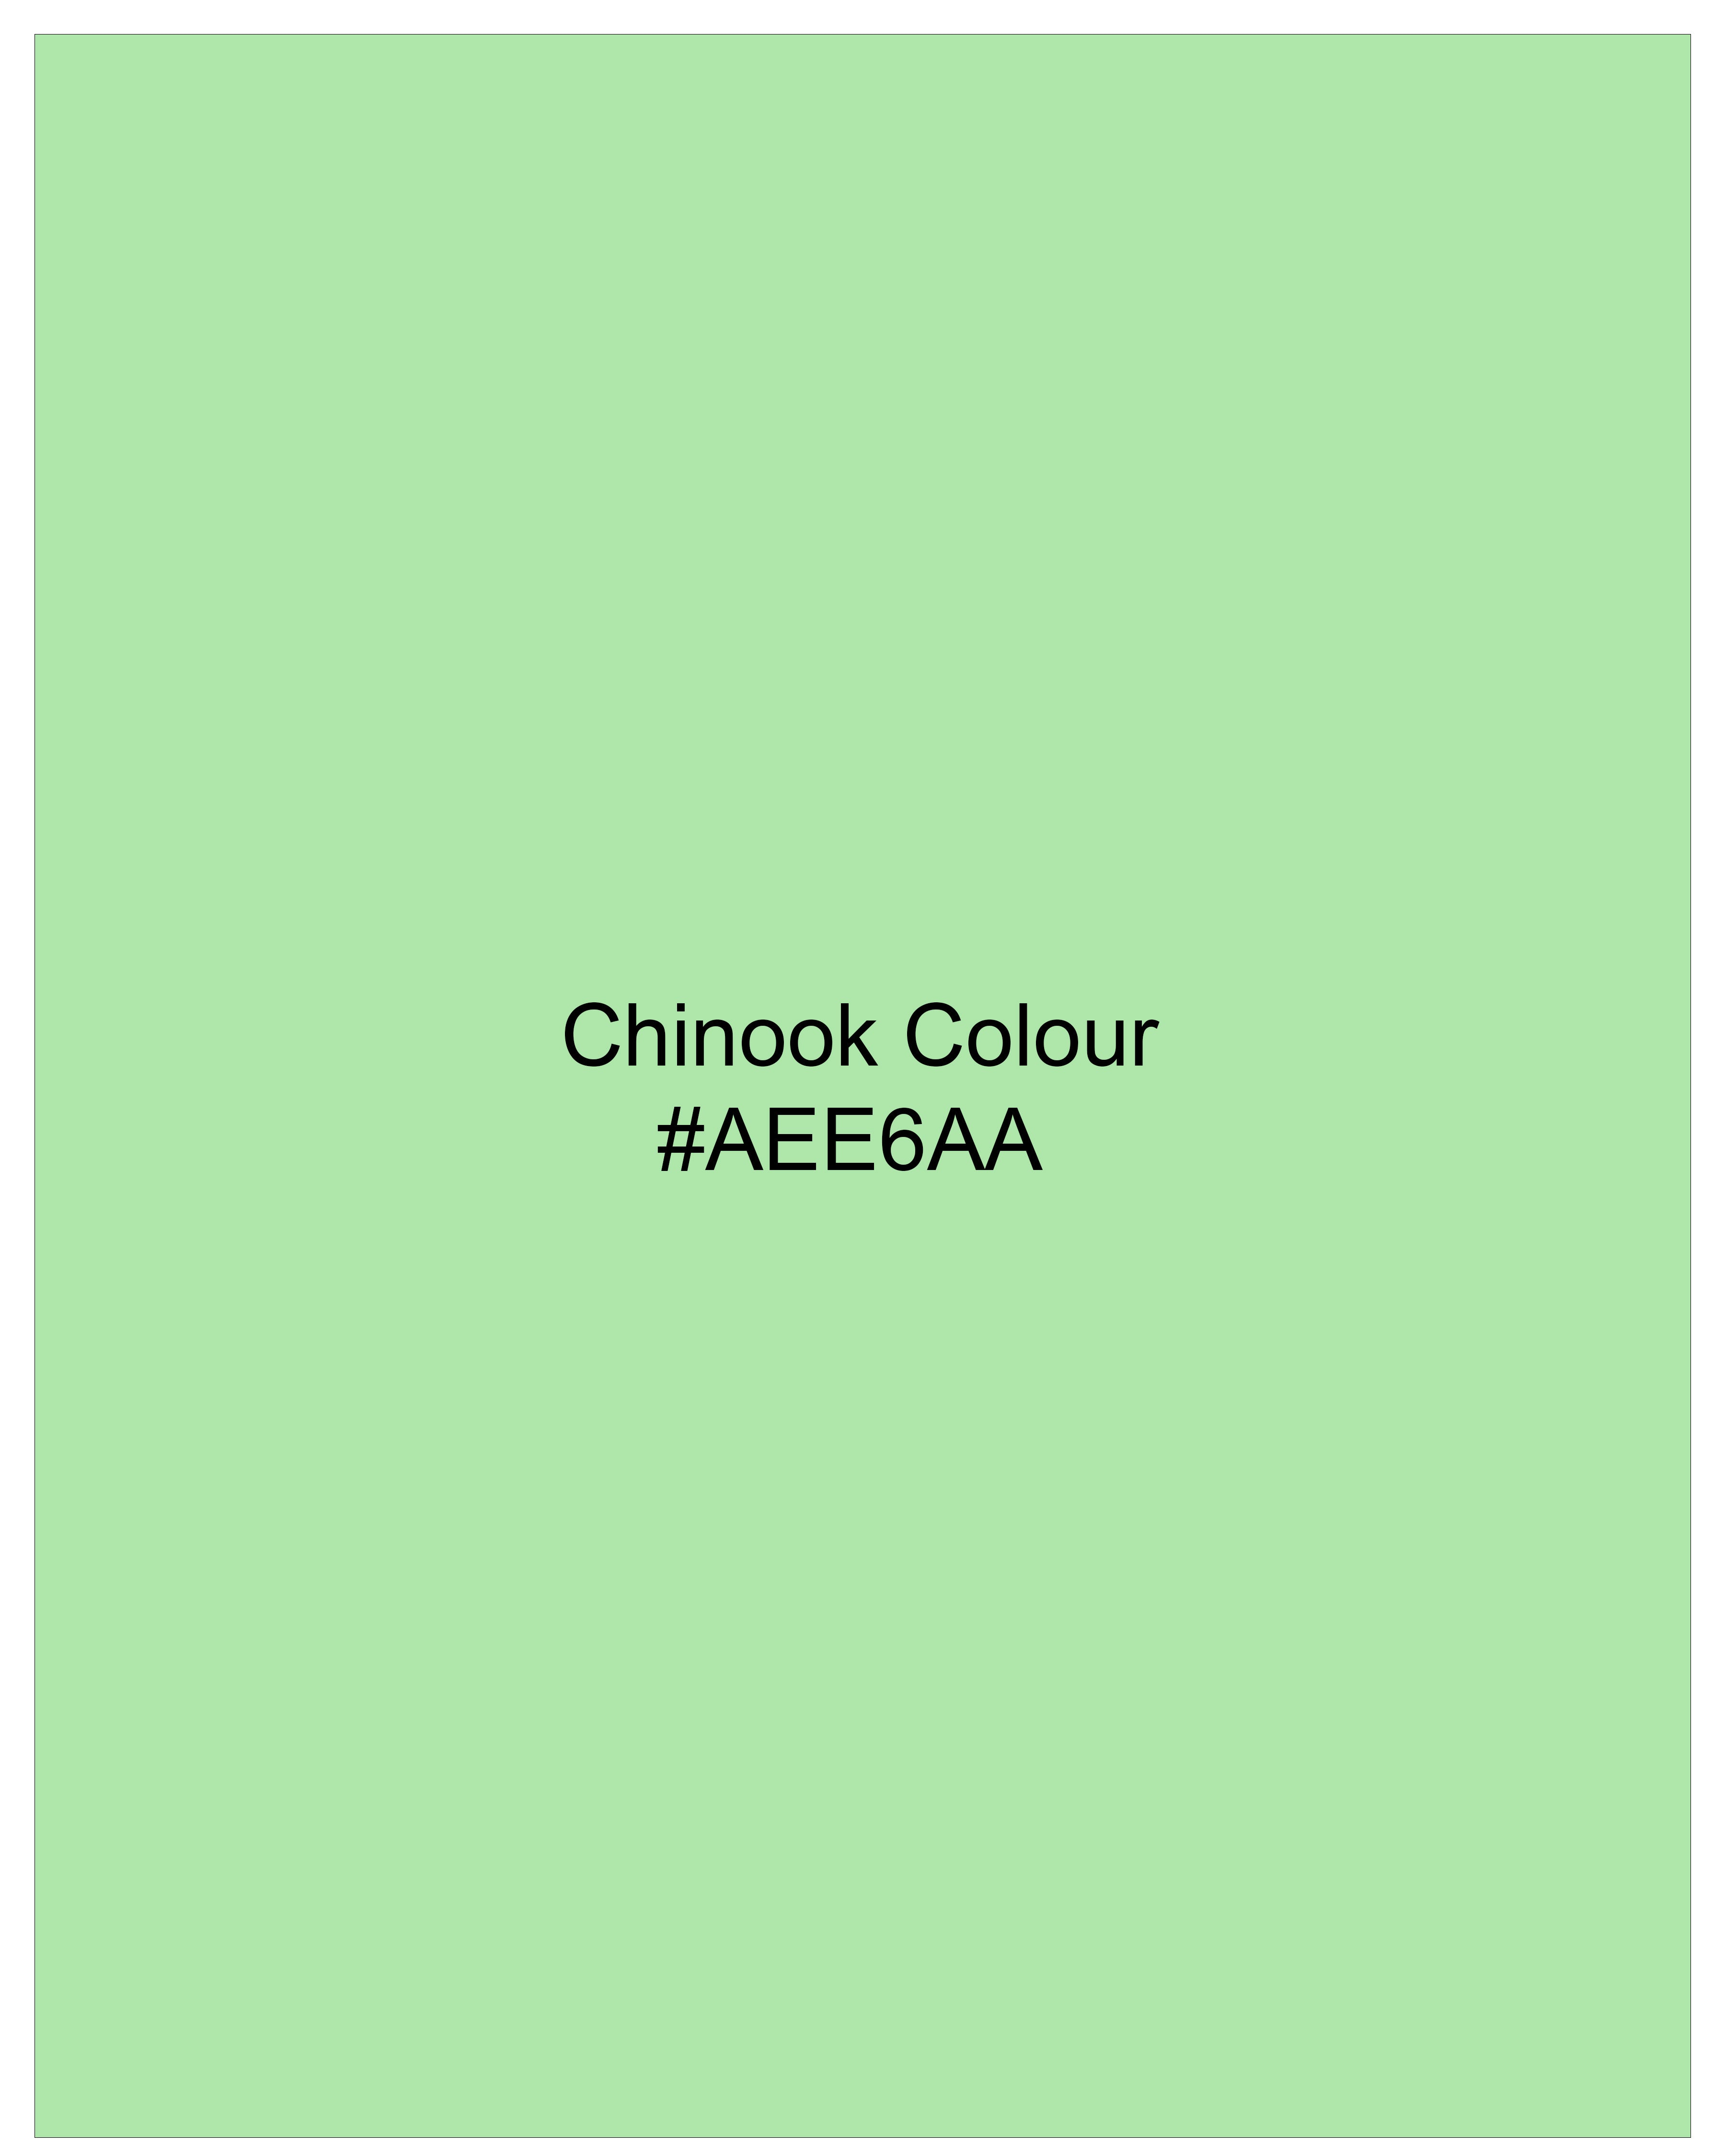 Chinook Green Luxurious Linen Overshirt 9237-OS-FP-38,9237-OS-FP-H-38,9237-OS-FP-39,9237-OS-FP-H-39,9237-OS-FP-40,9237-OS-FP-H-40,9237-OS-FP-42,9237-OS-FP-H-42,9237-OS-FP-44,9237-OS-FP-H-44,9237-OS-FP-46,9237-OS-FP-H-46,9237-OS-FP-48,9237-OS-FP-H-48,9237-OS-FP-50,9237-OS-FP-H-50,9237-OS-FP-52,9237-OS-FP-H-52